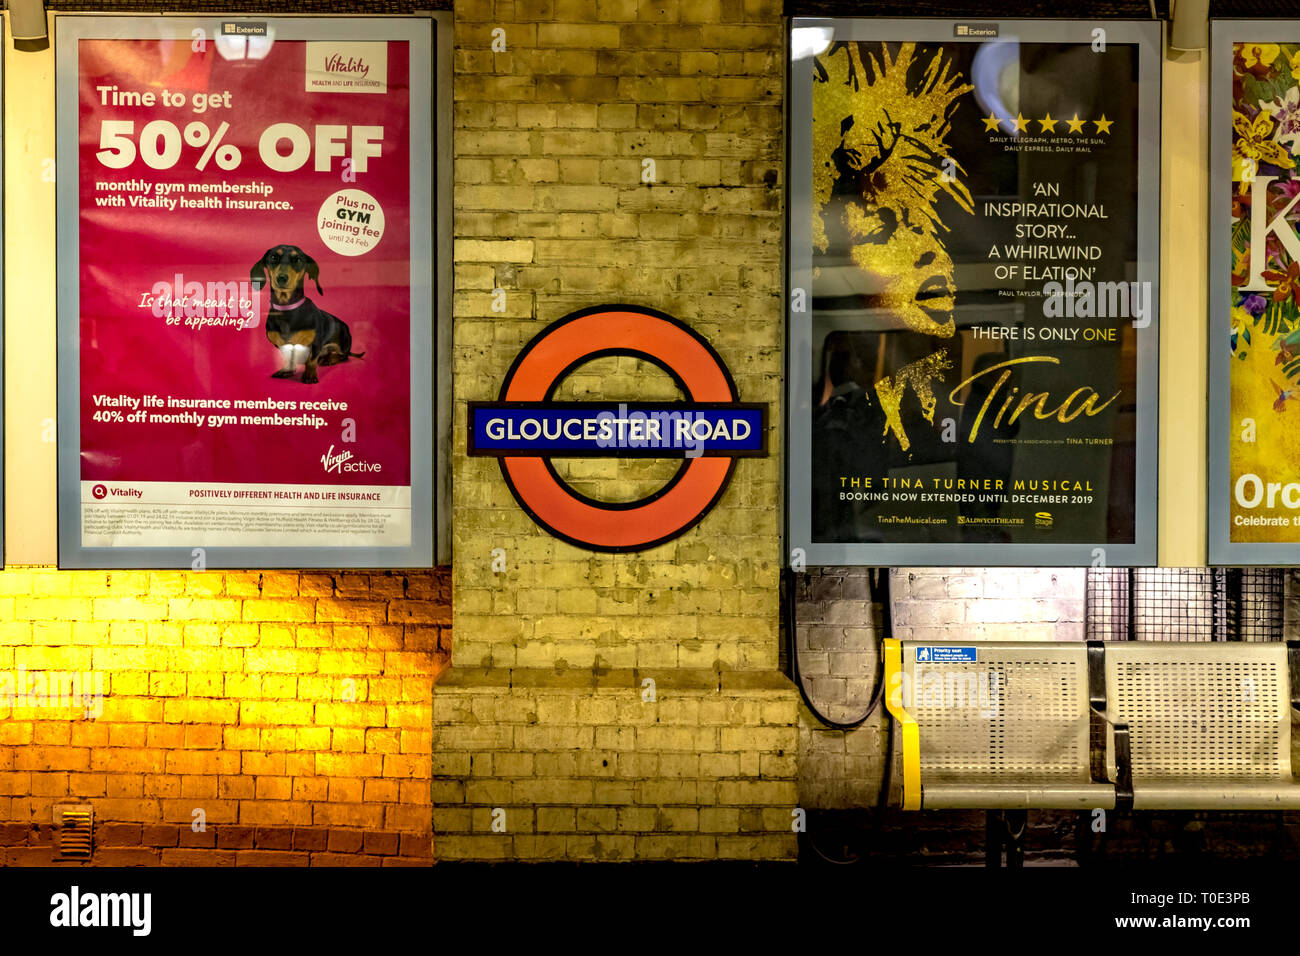 Bill affiche sur la station de métro Gloucester Road, Londres, Royaume-Uni Banque D'Images